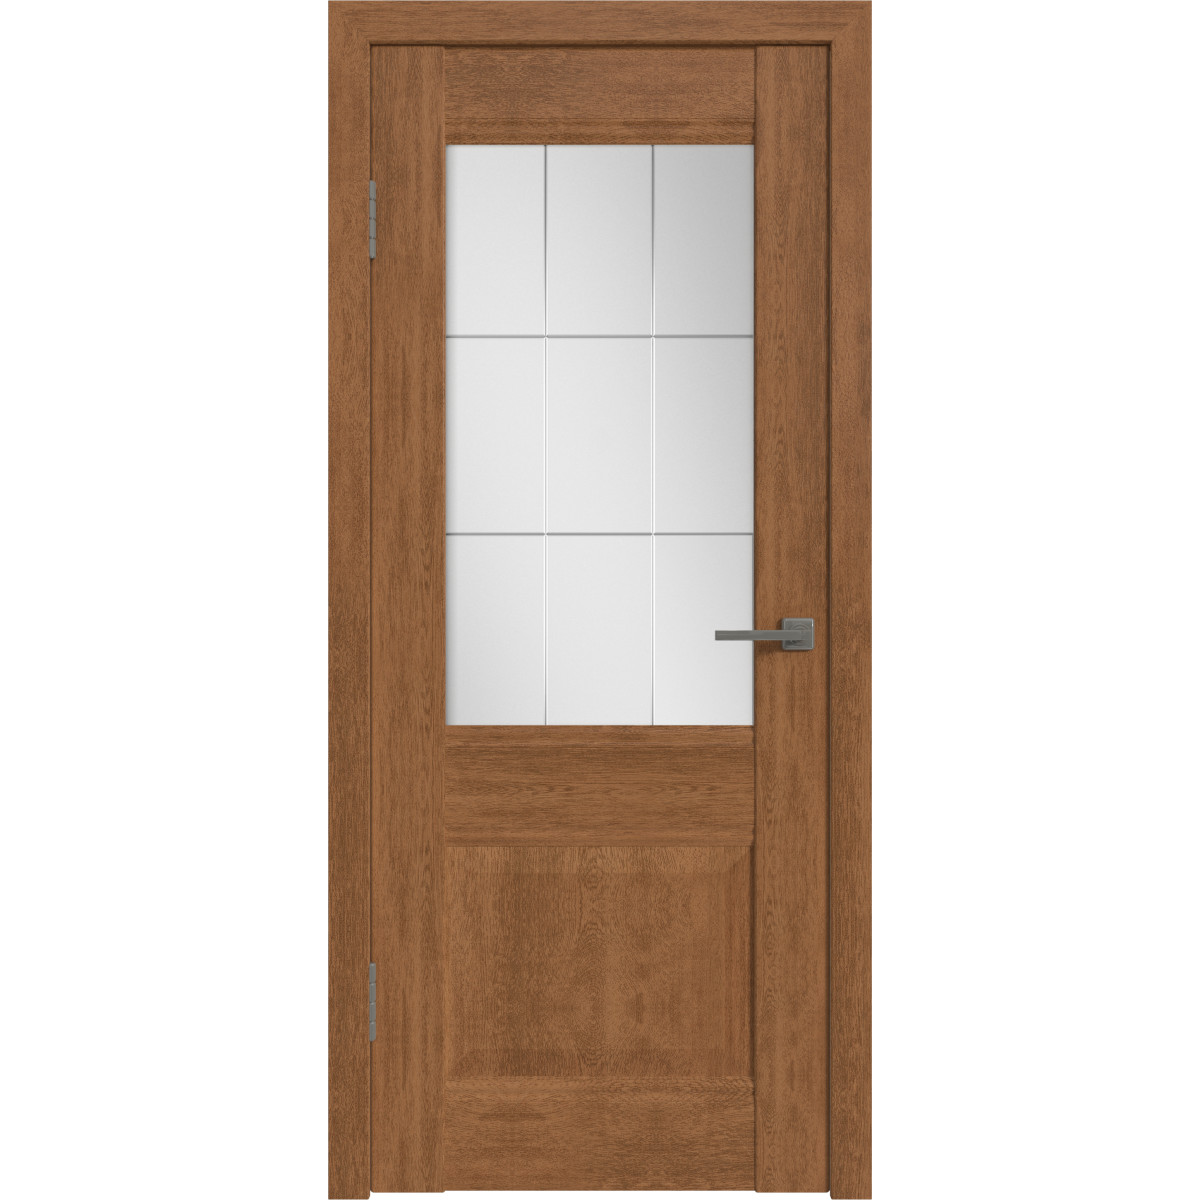 Дверь межкомнатная остеклённая с замком и петлями в комплекте Классик 2 70x200 см ПВХ цвет дуб аурум